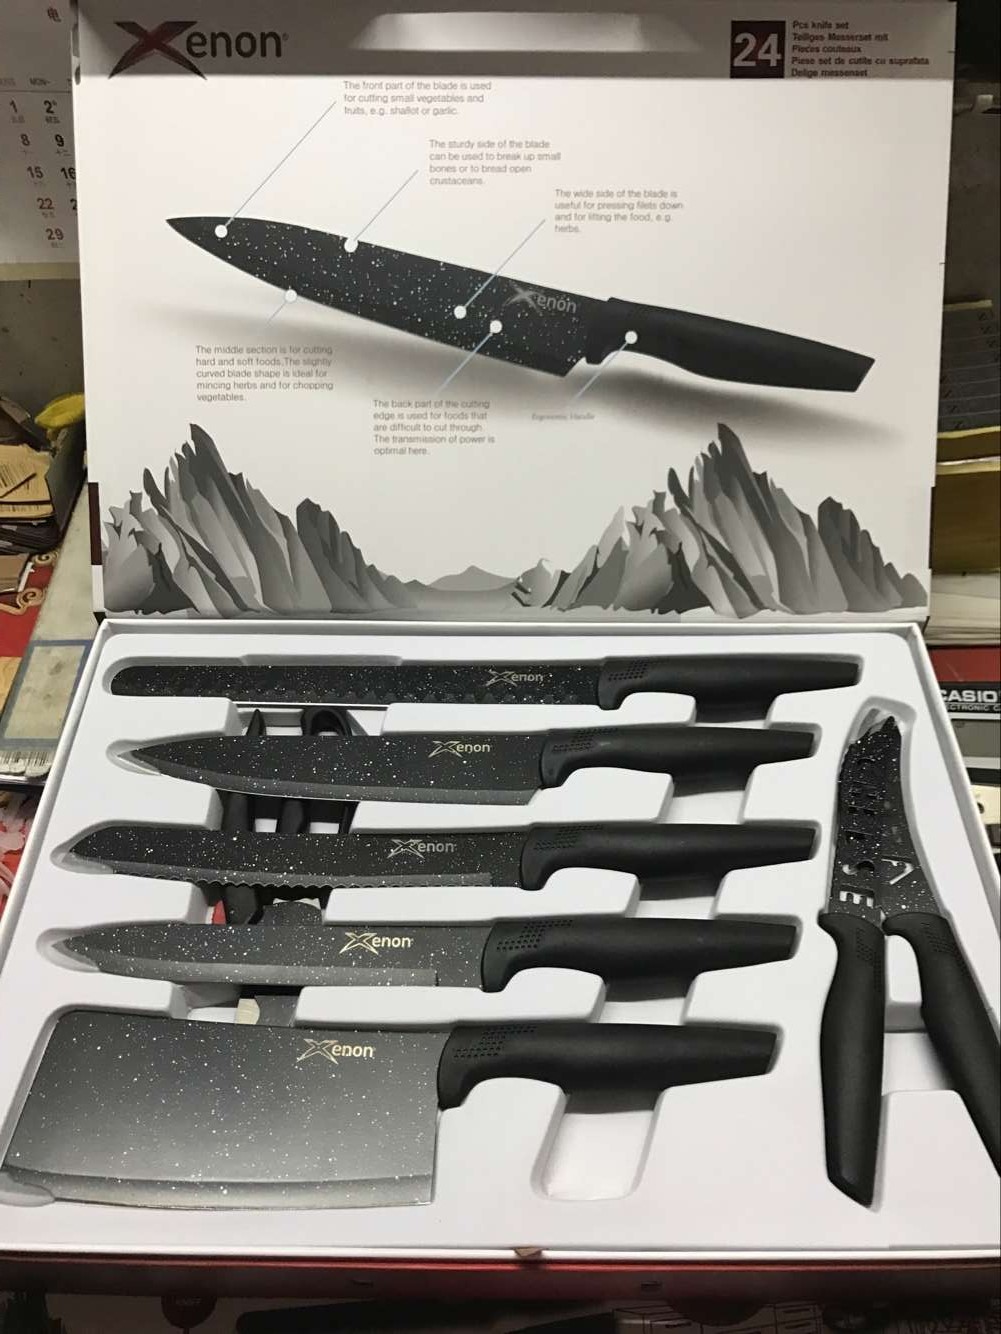 סט סכינים חדש המכיל 24 חלקים על שתי מגשיות במזוודת שי.
הסט מכיל סכיני מטבח שונים, מכשיר להשחזת סכינים,  מספריים לטיפול בבשר וכן סט סכינים ומזלגות לבשר.
